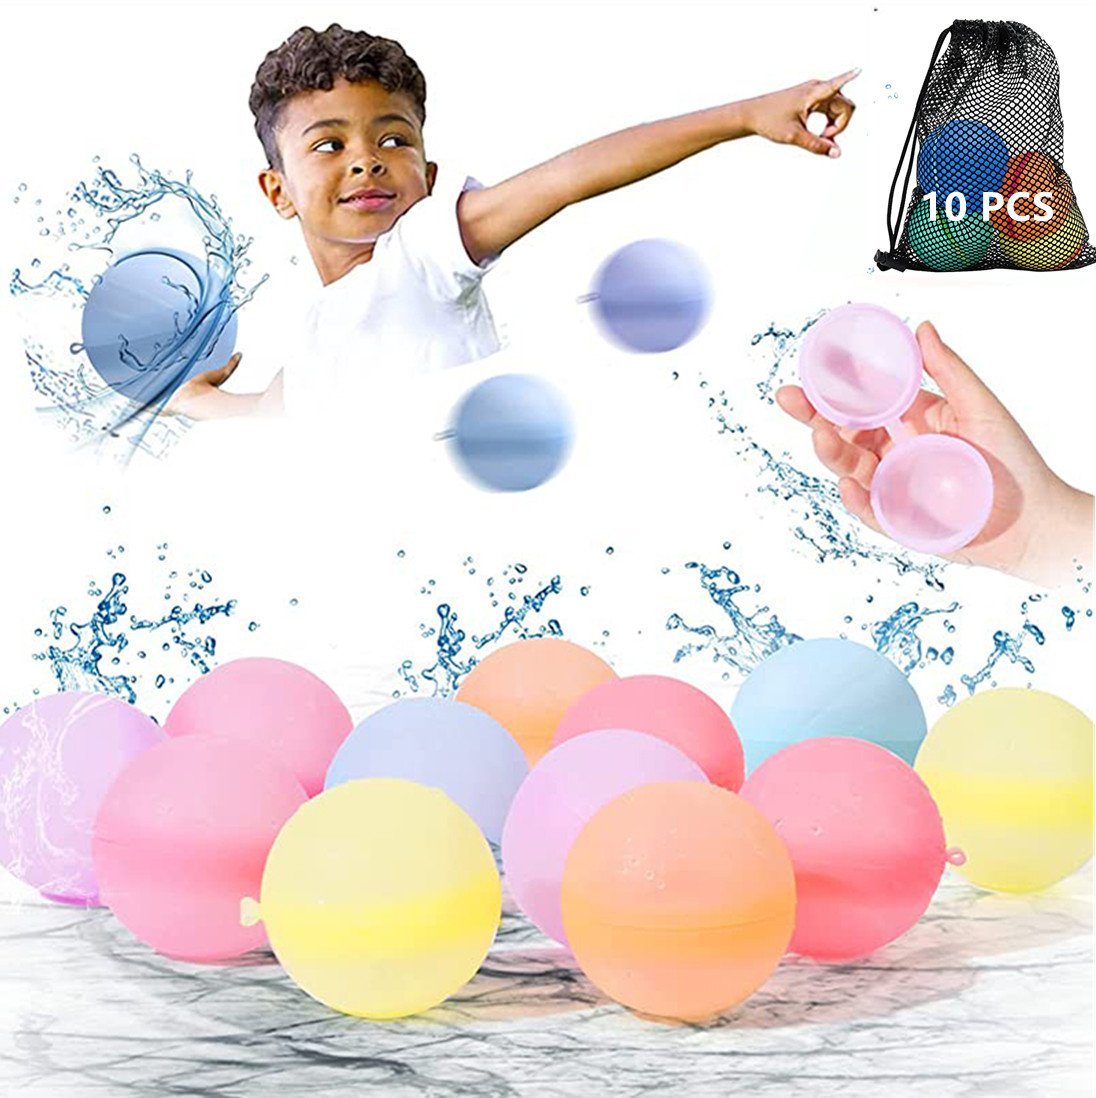 verbilligt XDeer Wasserball Wiederverwendbare Wasserbomben,Reusable Netzbeutel,Schnell mit Balloon, Befüllbar,Selbstdichtende Water Silikonbälle